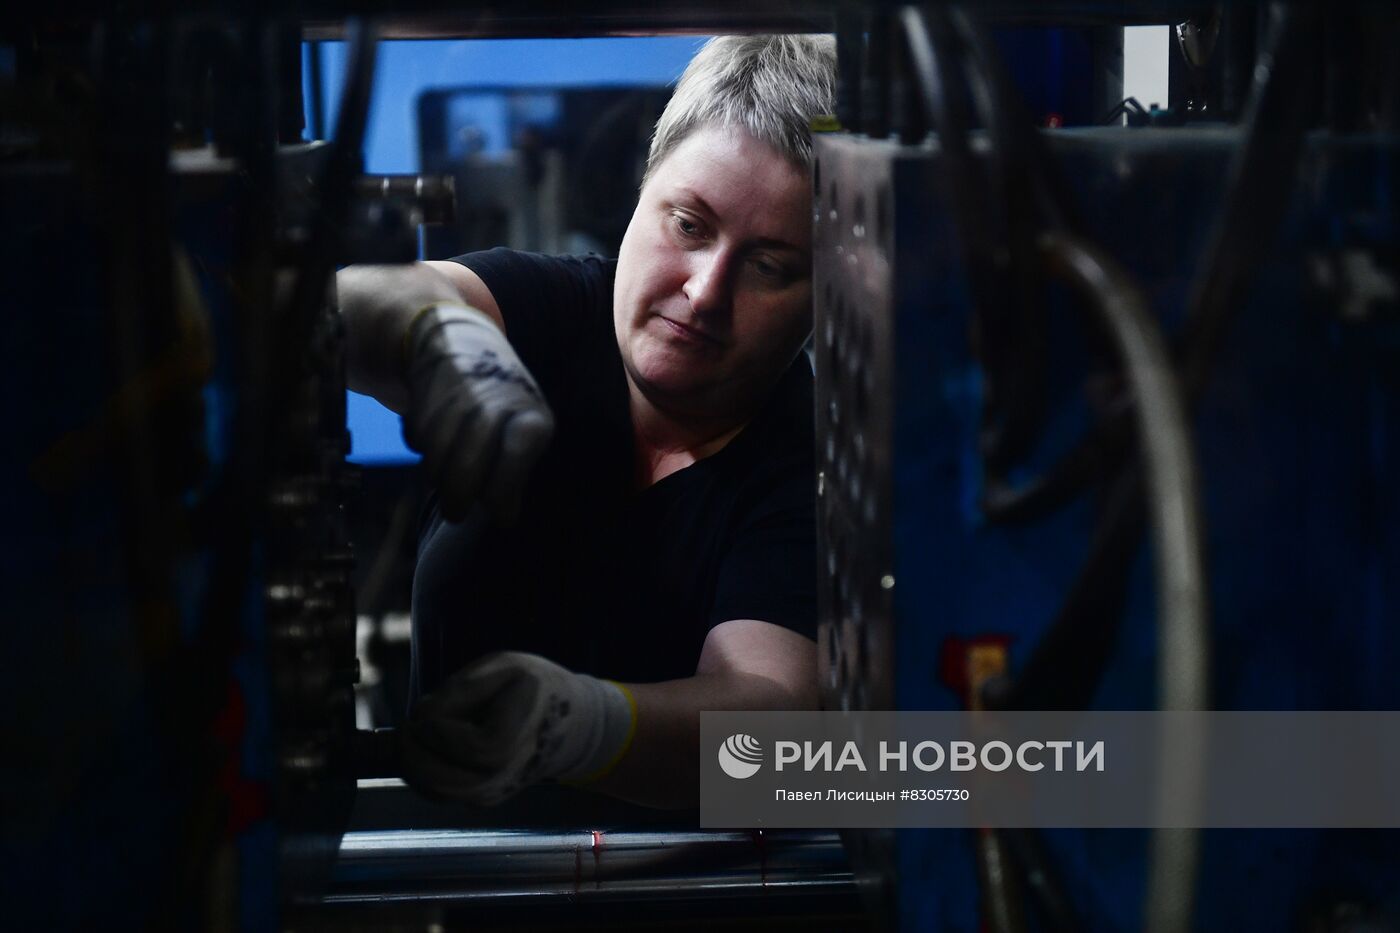 Производство труб в Свердловской области